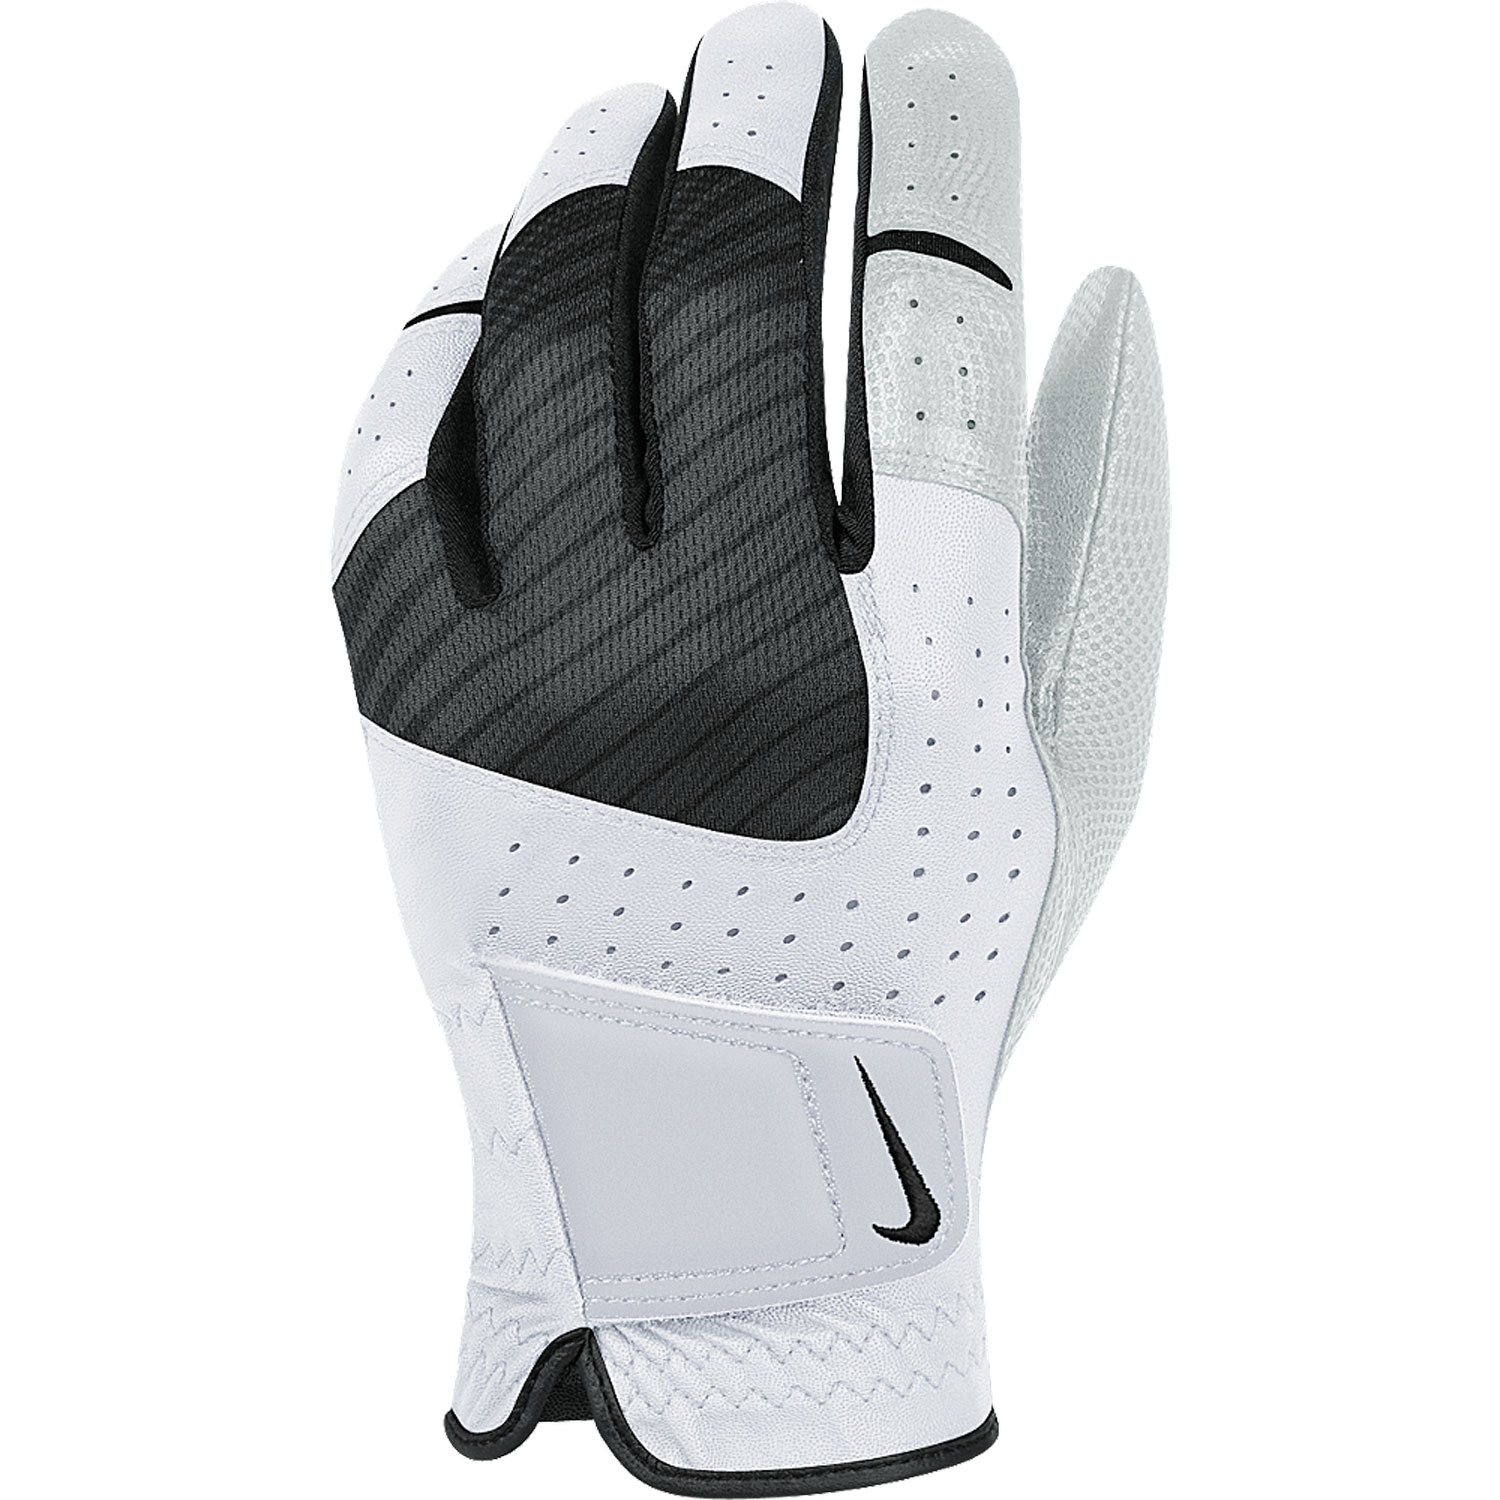 Tech Xtreme Golf Glove White/Black-Cool Grey Male